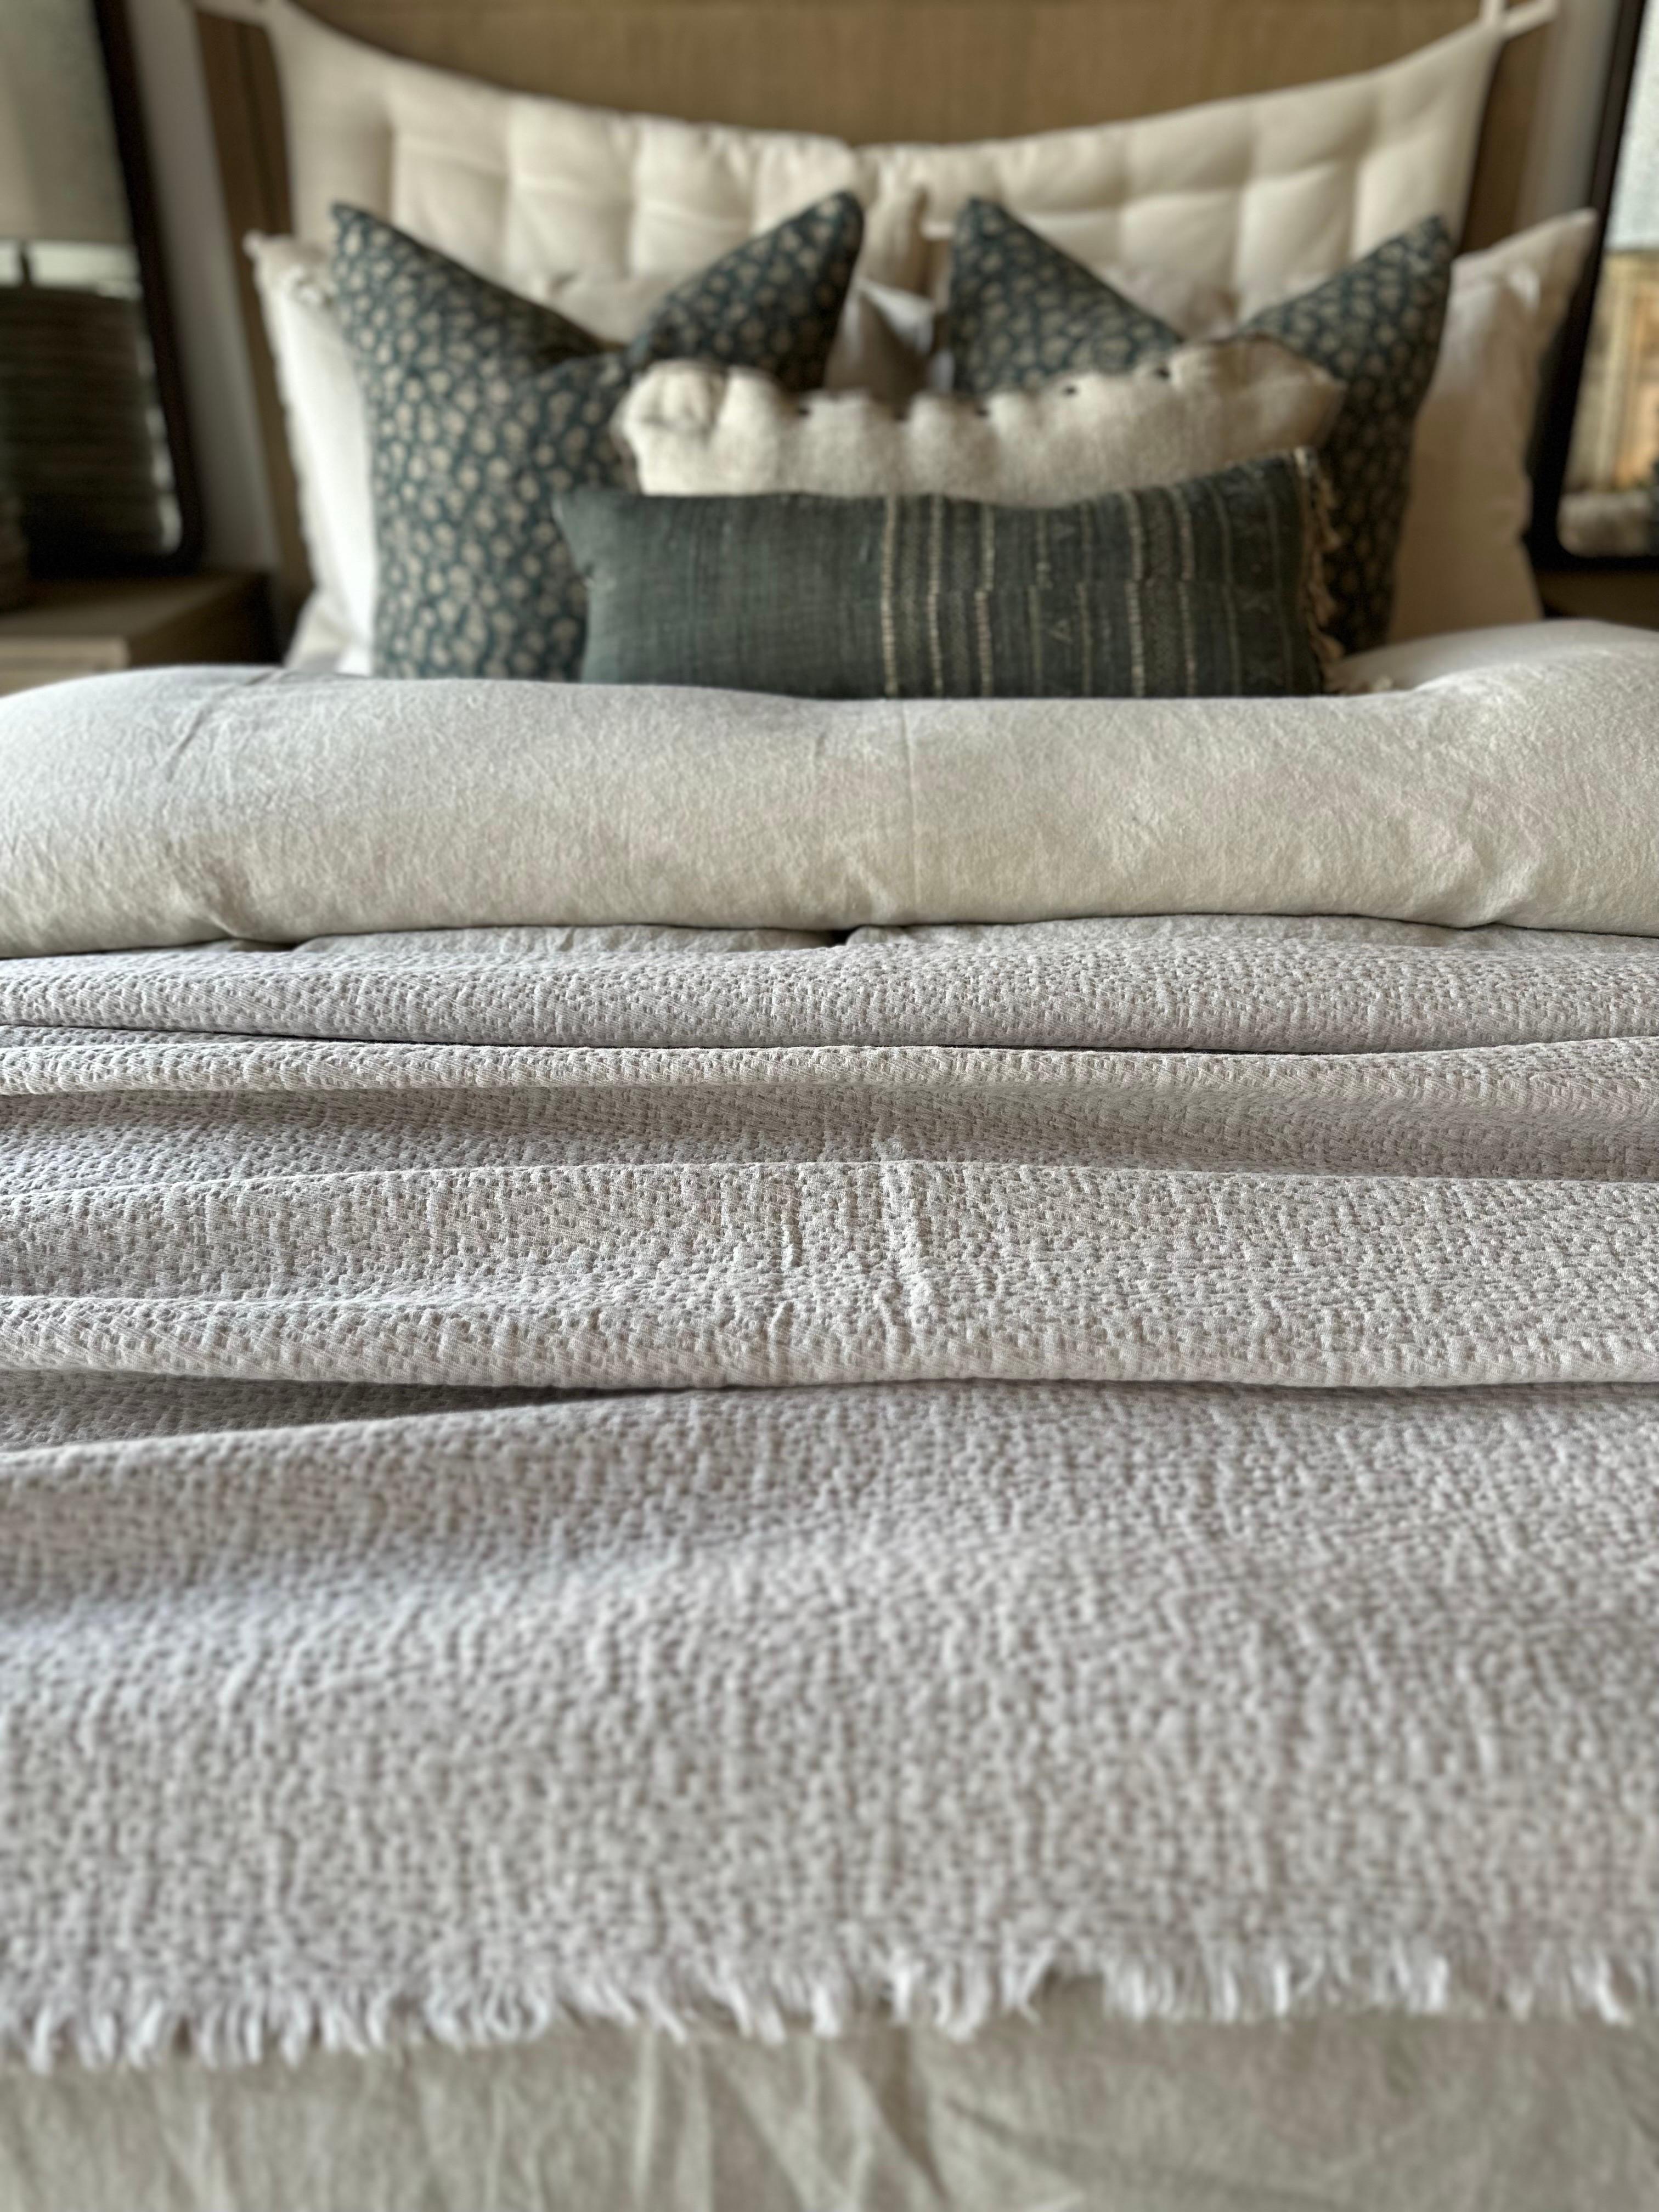 Un couvre-lit en coton gaufré doux et pelucheux. Idéal pour mettre en valeur le bout du lit, ou comme couvre-lit.
Couleur : Beige-rose-104-94 (beige nude avec une teinte subtile de blush)
Taille : 94x102
Grandes dimensions pouvant accueillir un lit